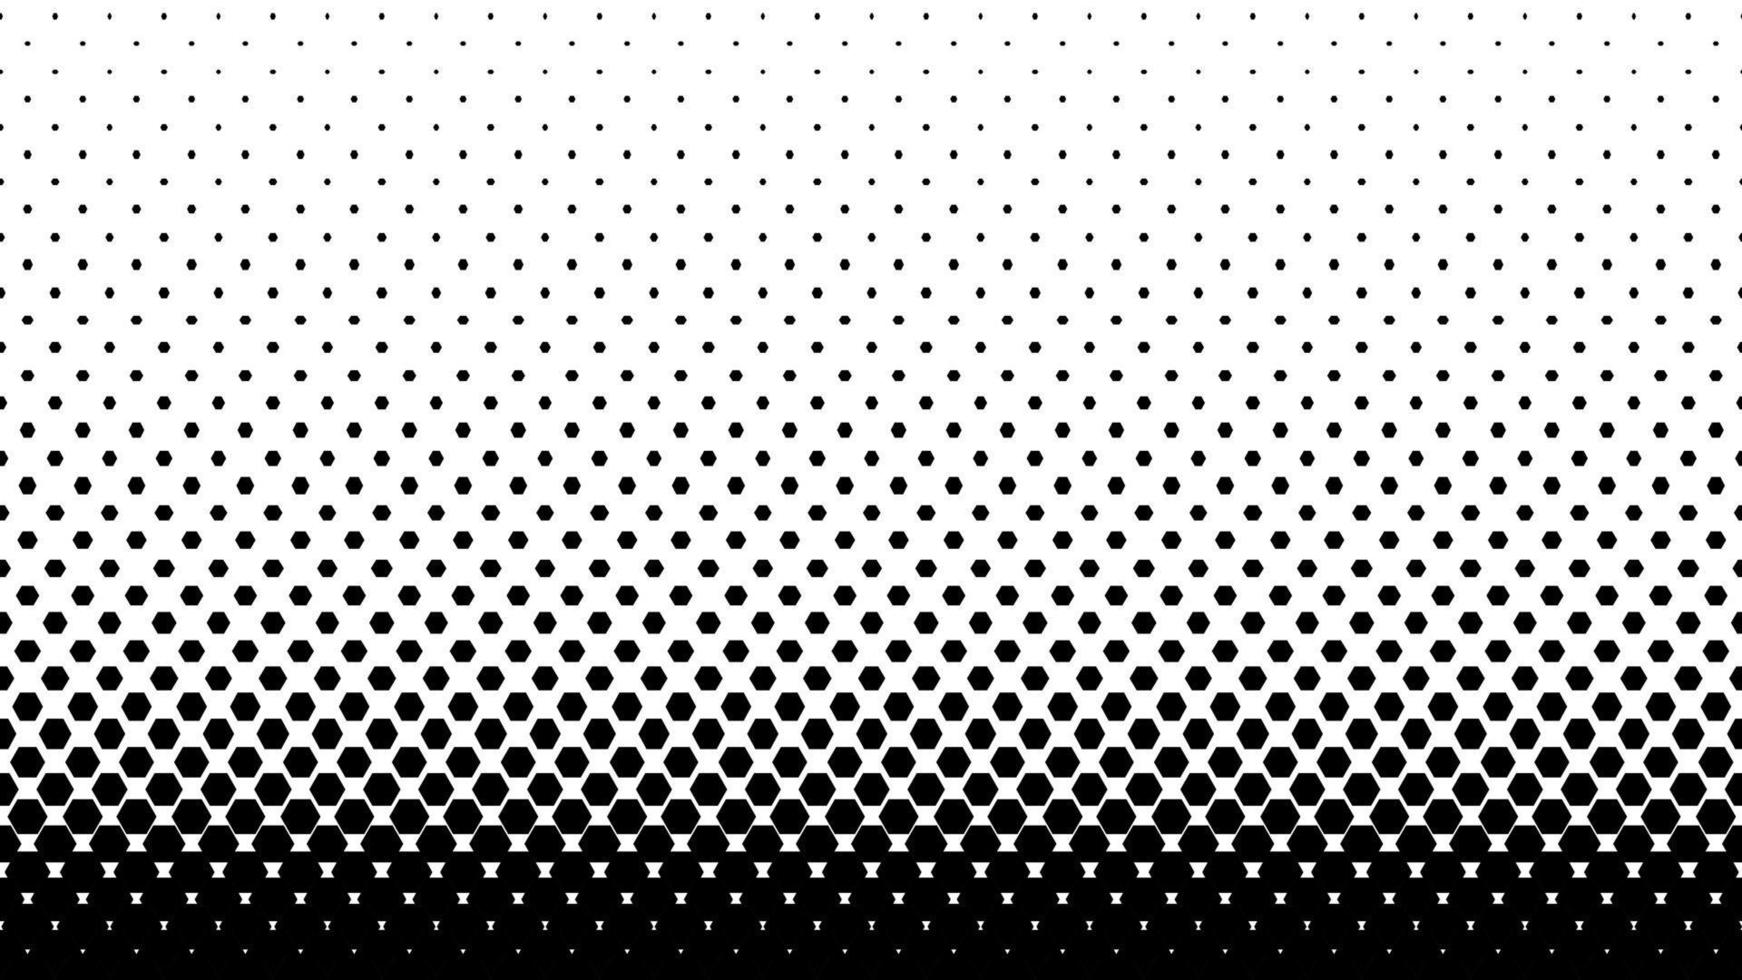 svart och vit halvton geometrisk bakgrund med hexagoner. vektor